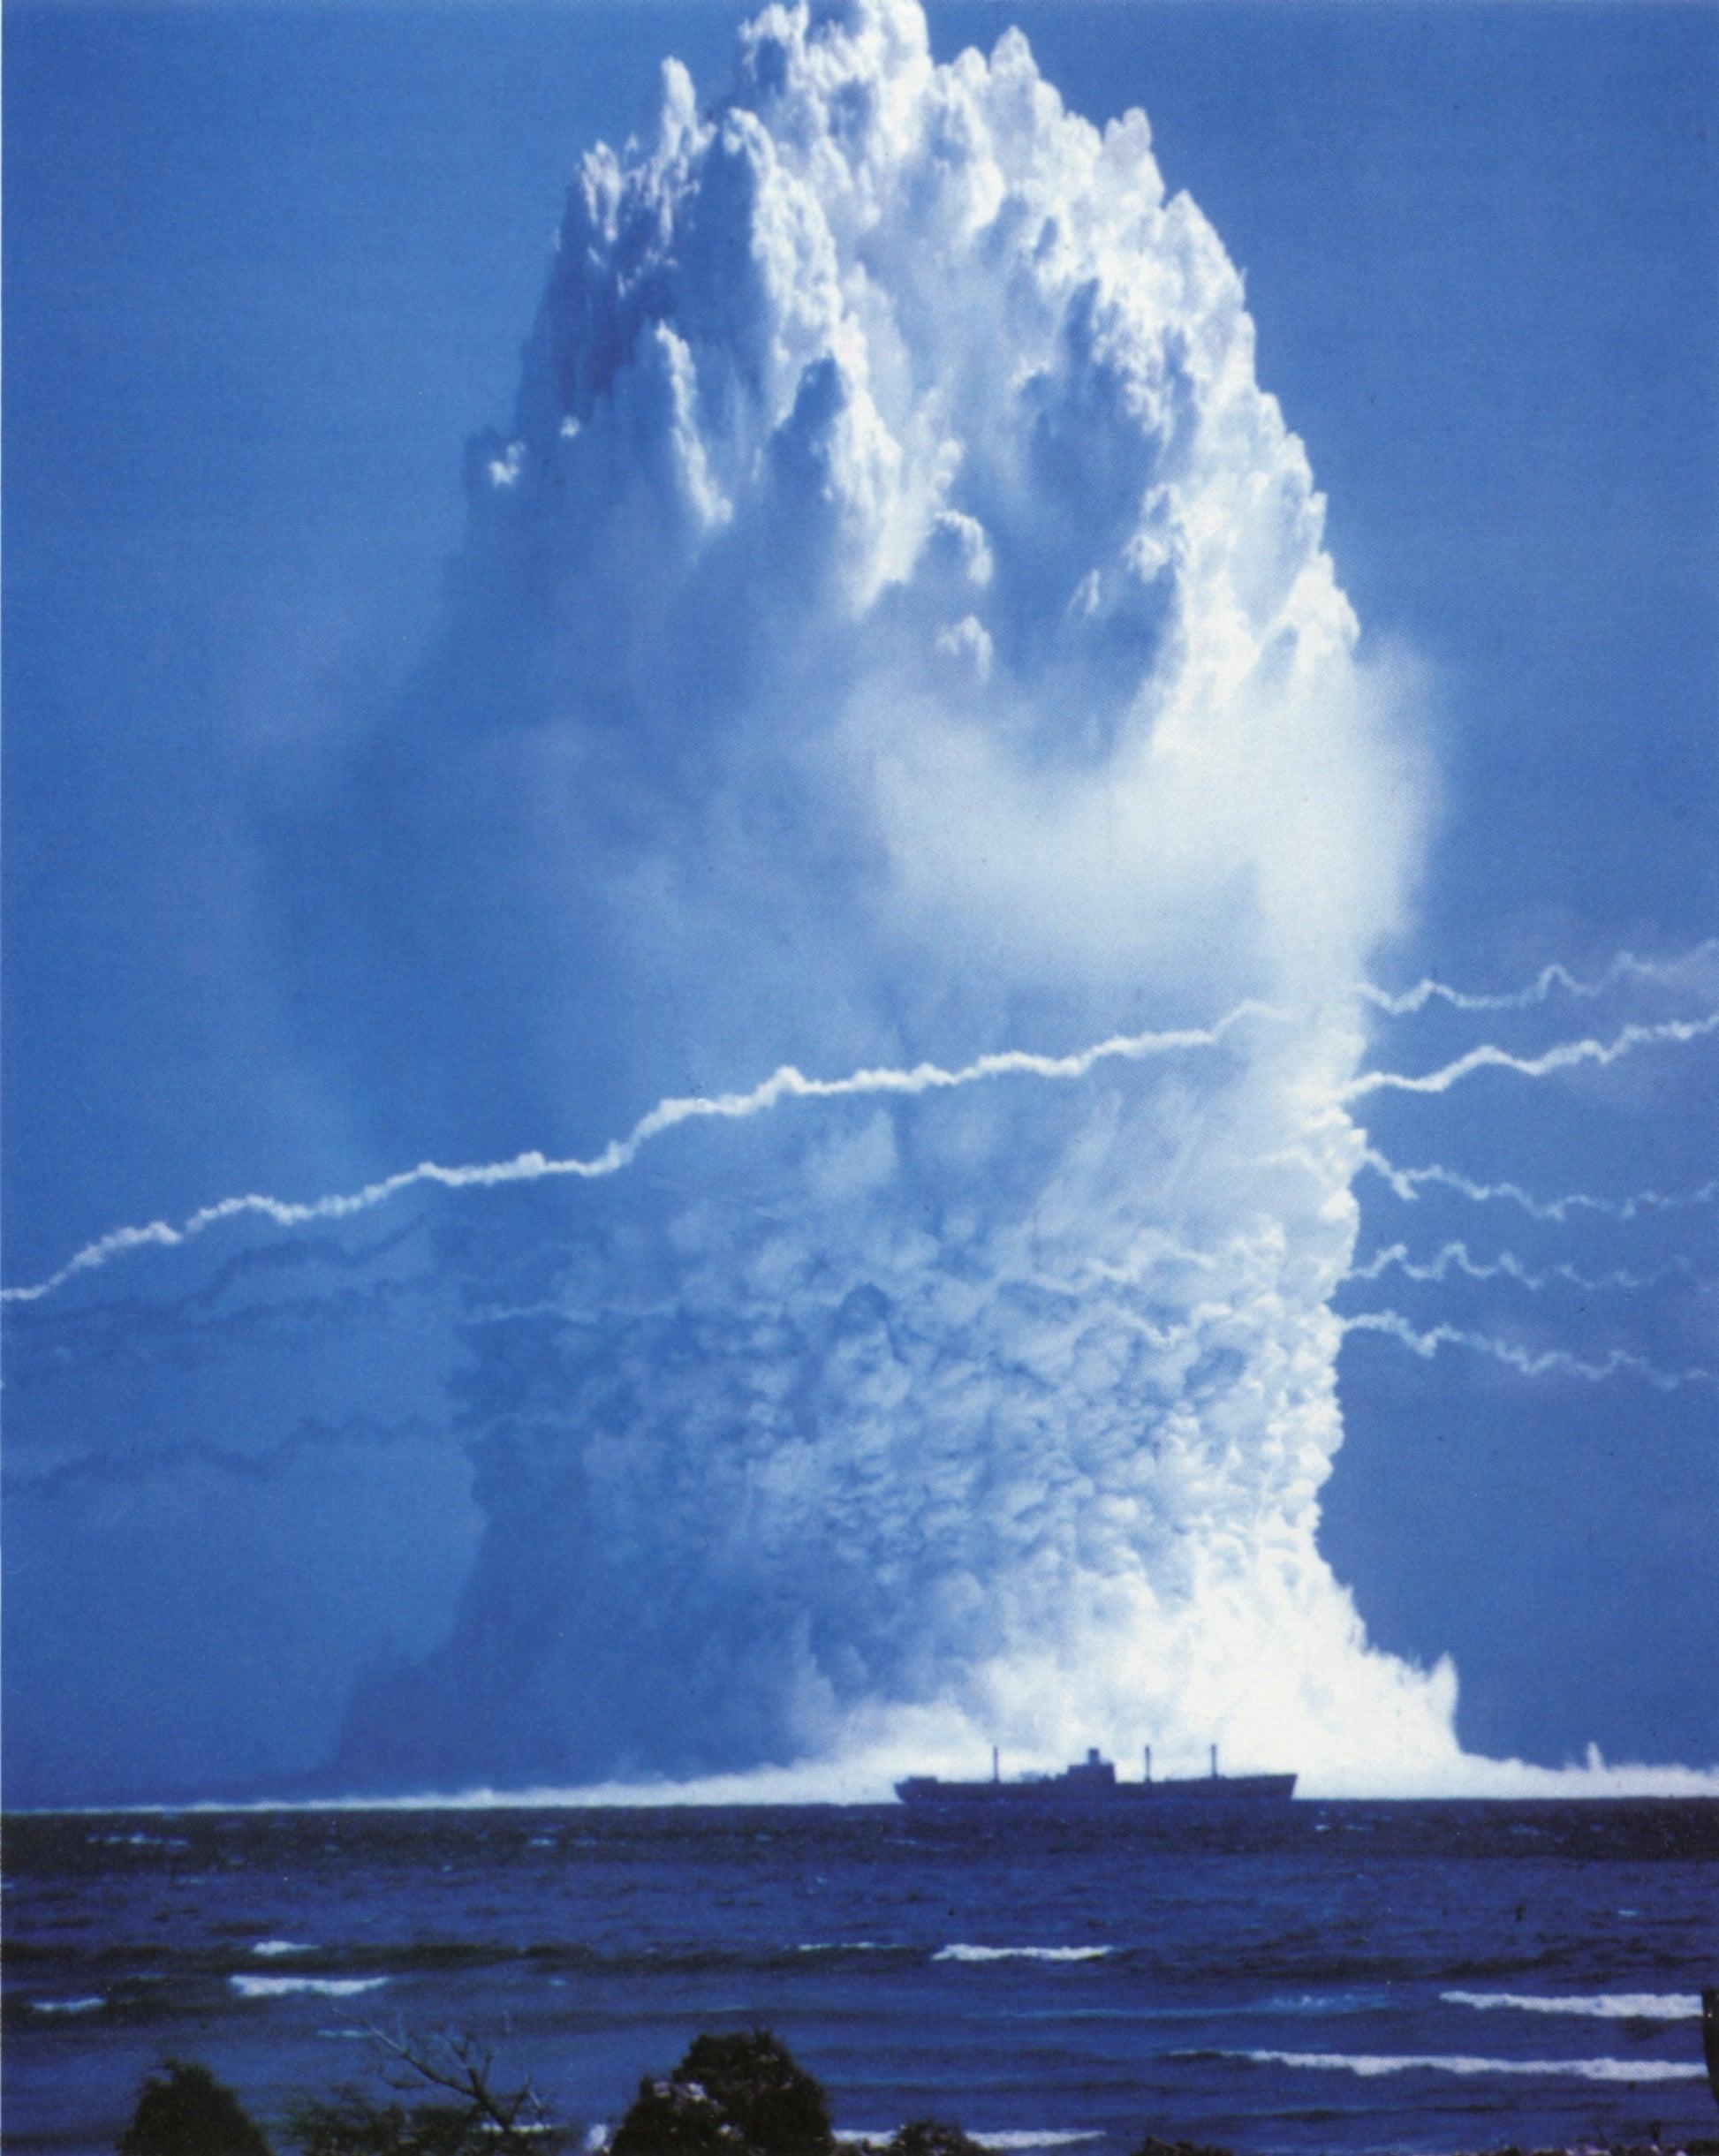 核弹水下爆炸如果按照核弹头的tnt当量来计算,一枚重型鱼雷的500